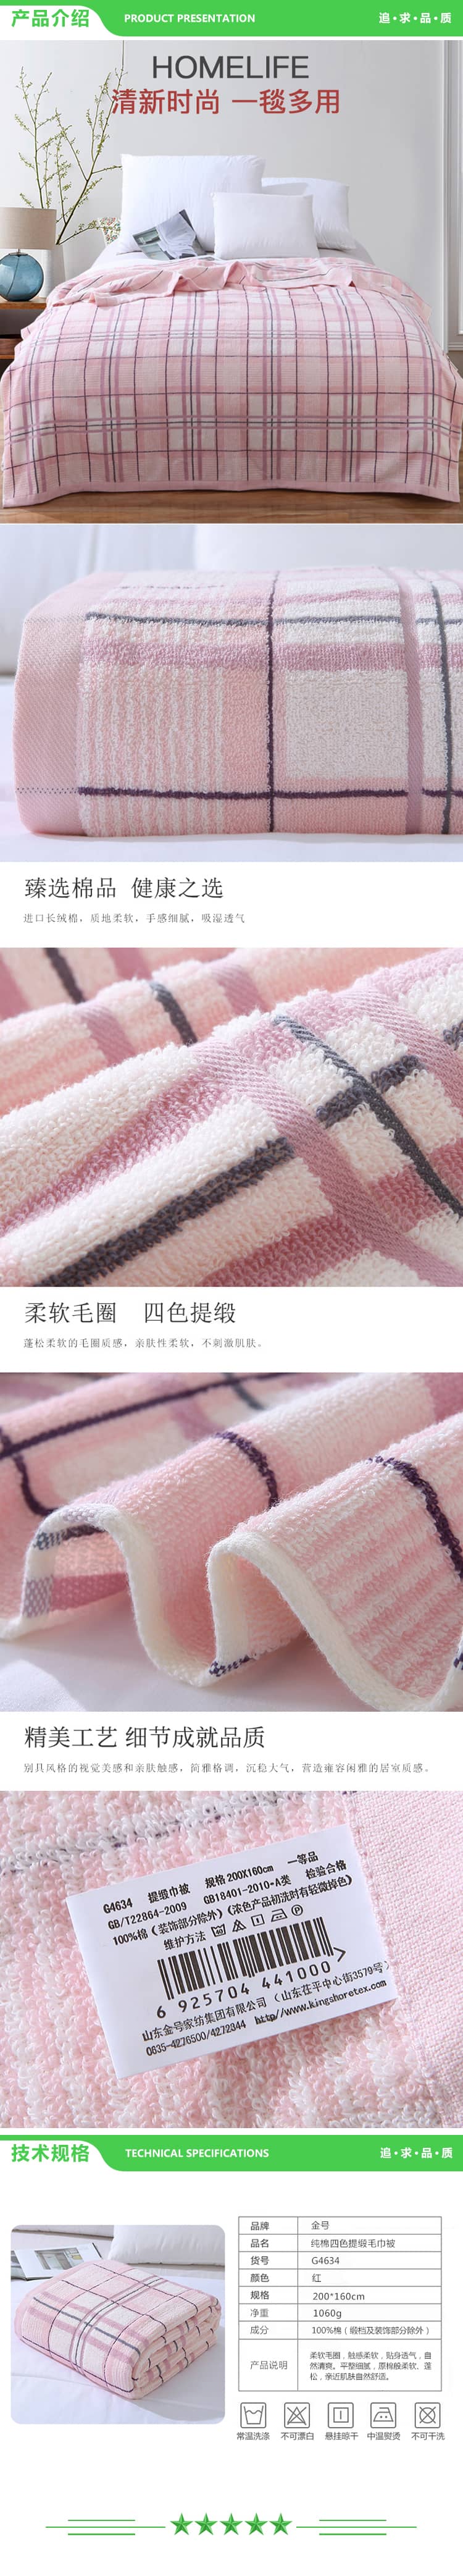 金号 KINGSHORE G4634 A类纯棉格子毛巾被盖毯多功能毯一条装 1050g 200X160cm 2.jpg